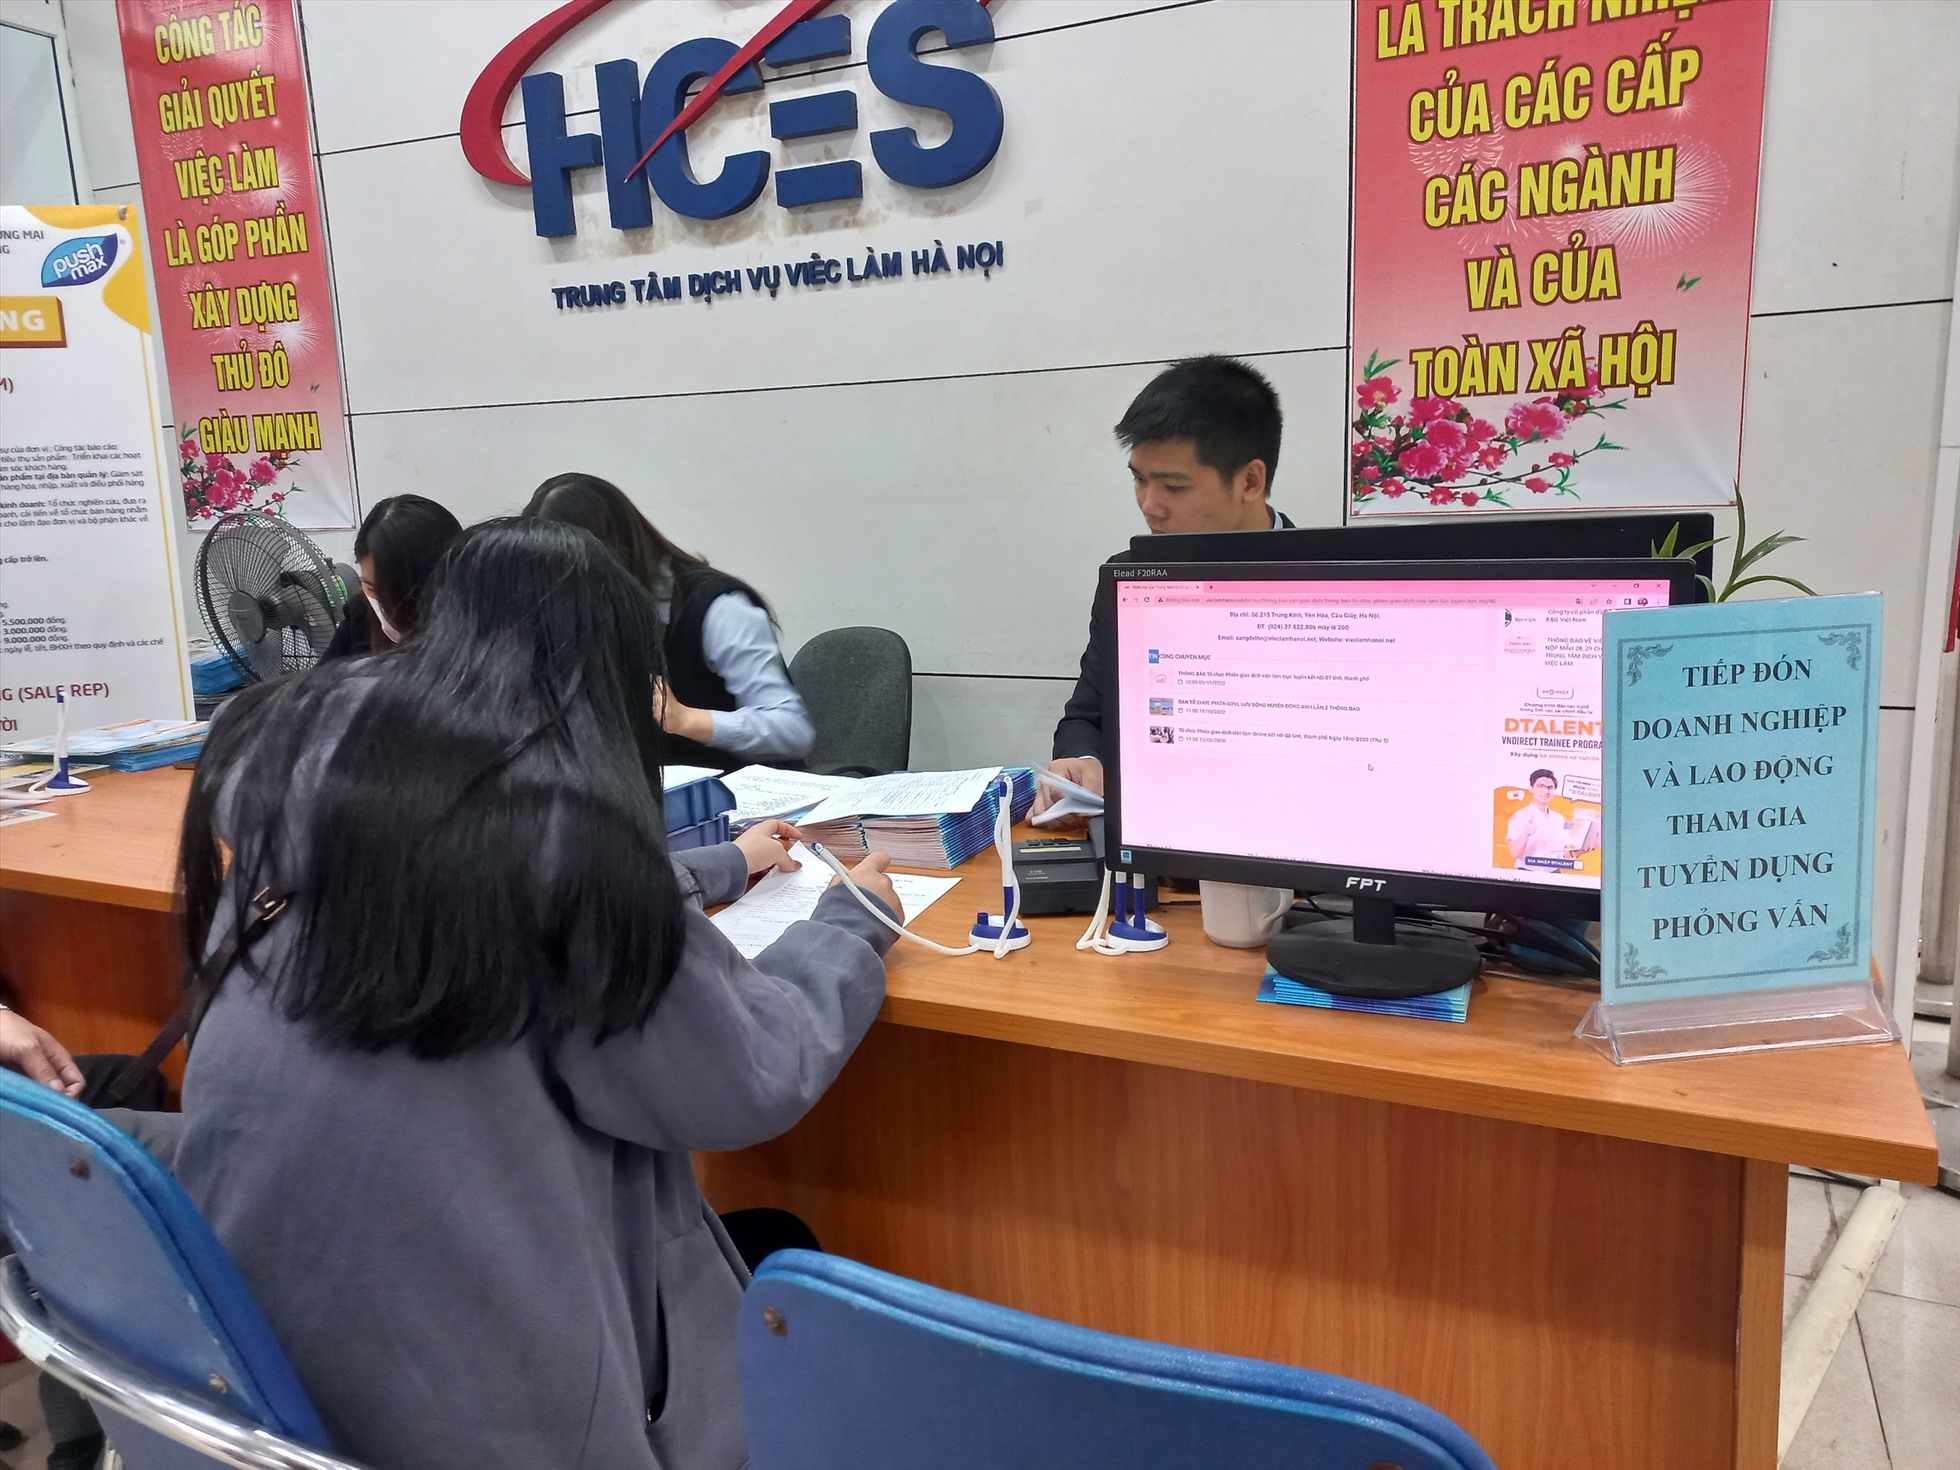 Nhiều người lao động trẻ tìm kiếm việc làm tại TTDVVL Hà Nội. Ảnh: Lương Hạnh.